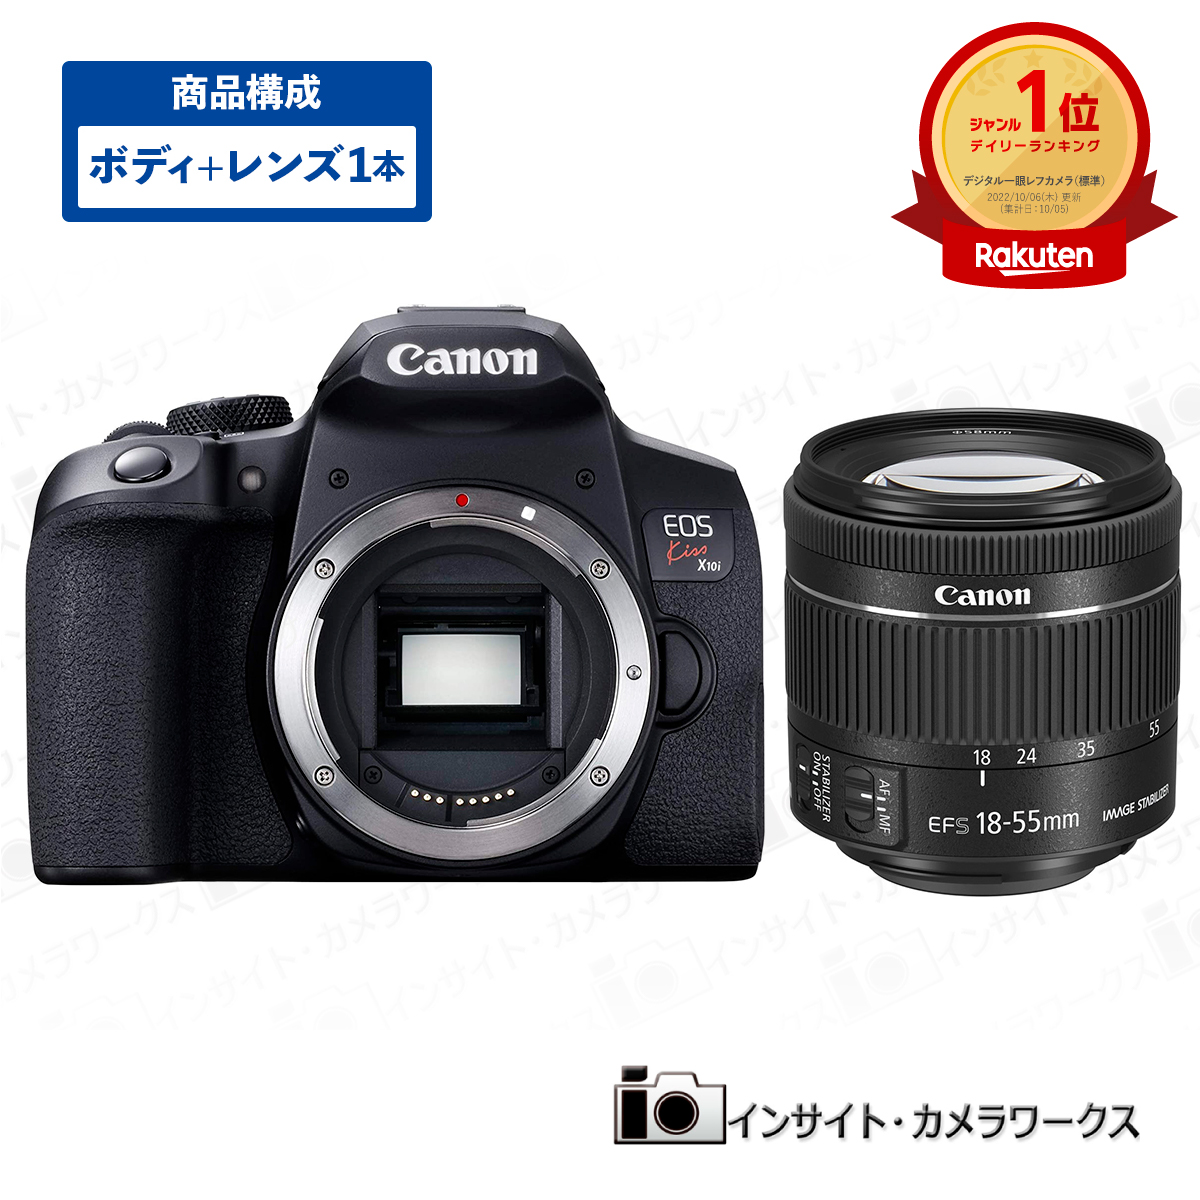 キヤノン EOS Kiss X10i ボディ ブラック   標準ズームレンズセット EF-S18-55mm F4.0-5.6 IS STM デジタル一眼レフカメラ イオス Canon